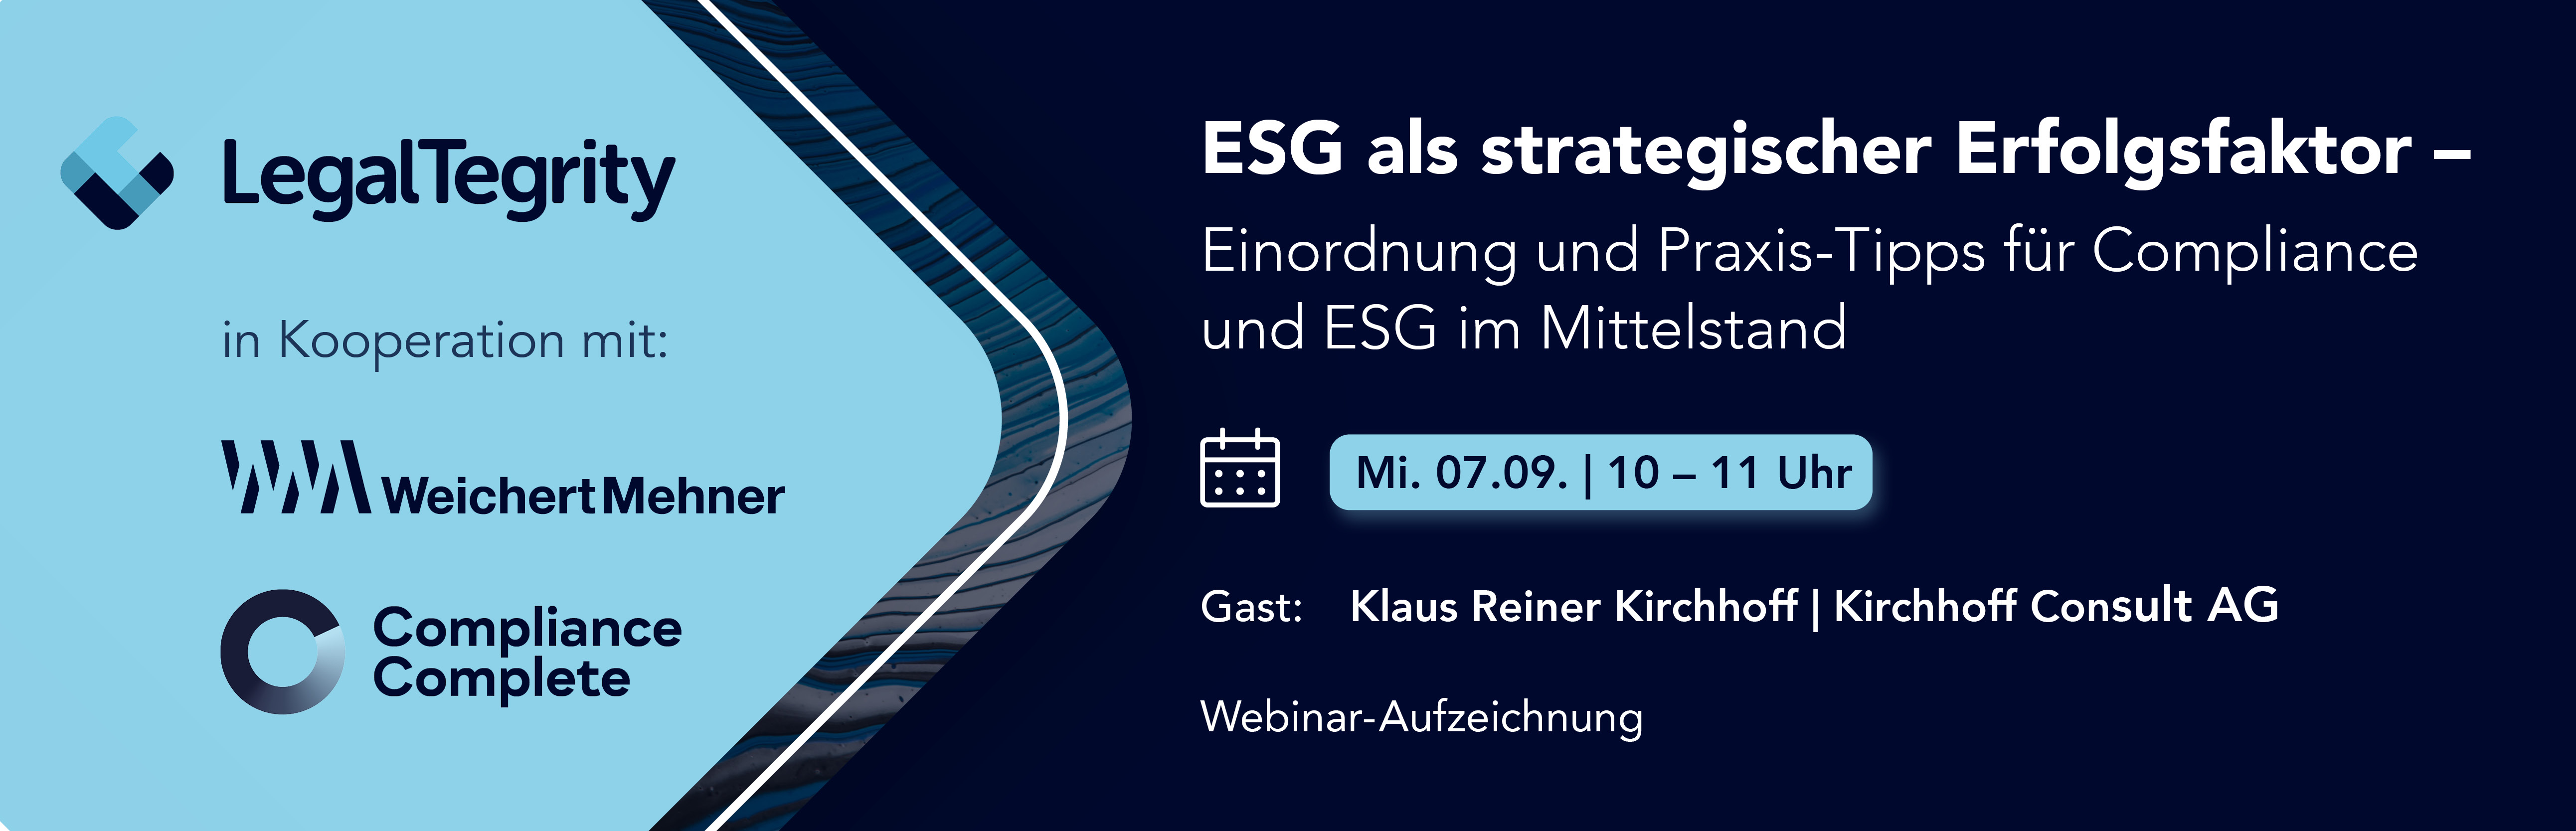 Aufzeichnung Webinar ESG als strategischer Erfolgsfaktor – Einordnung und Praxis-Tipps für Compliance und ESG im Mittelstand vom 07.09.2022